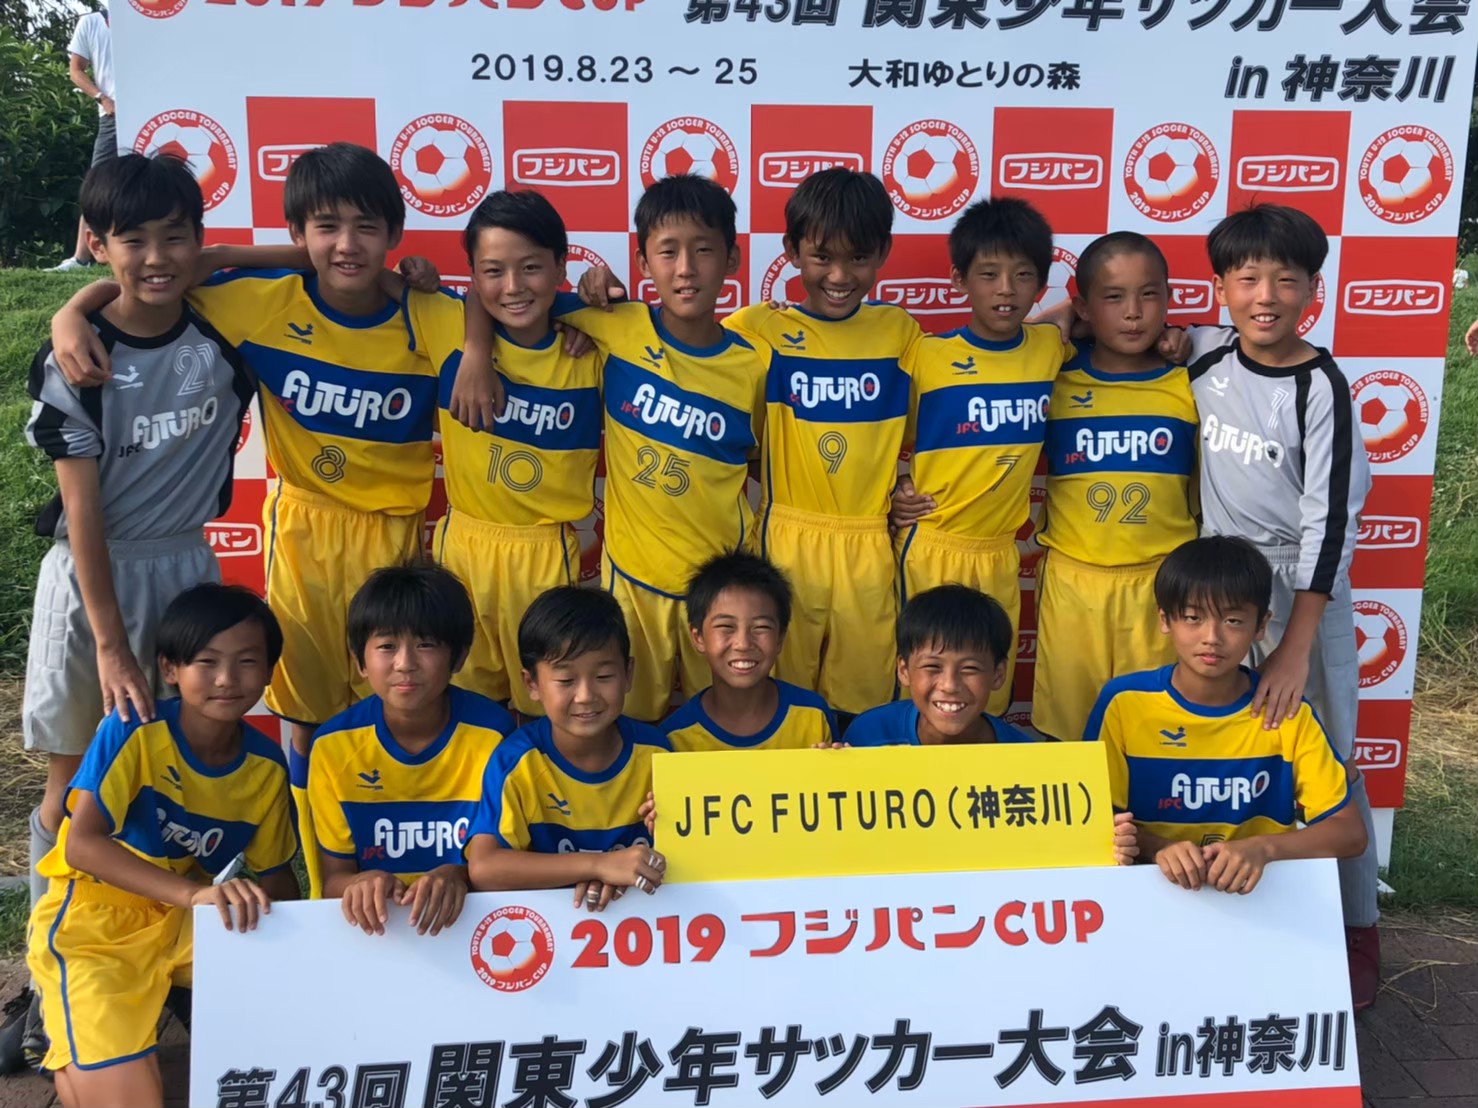 ジュニアチーム Jfc Futuro